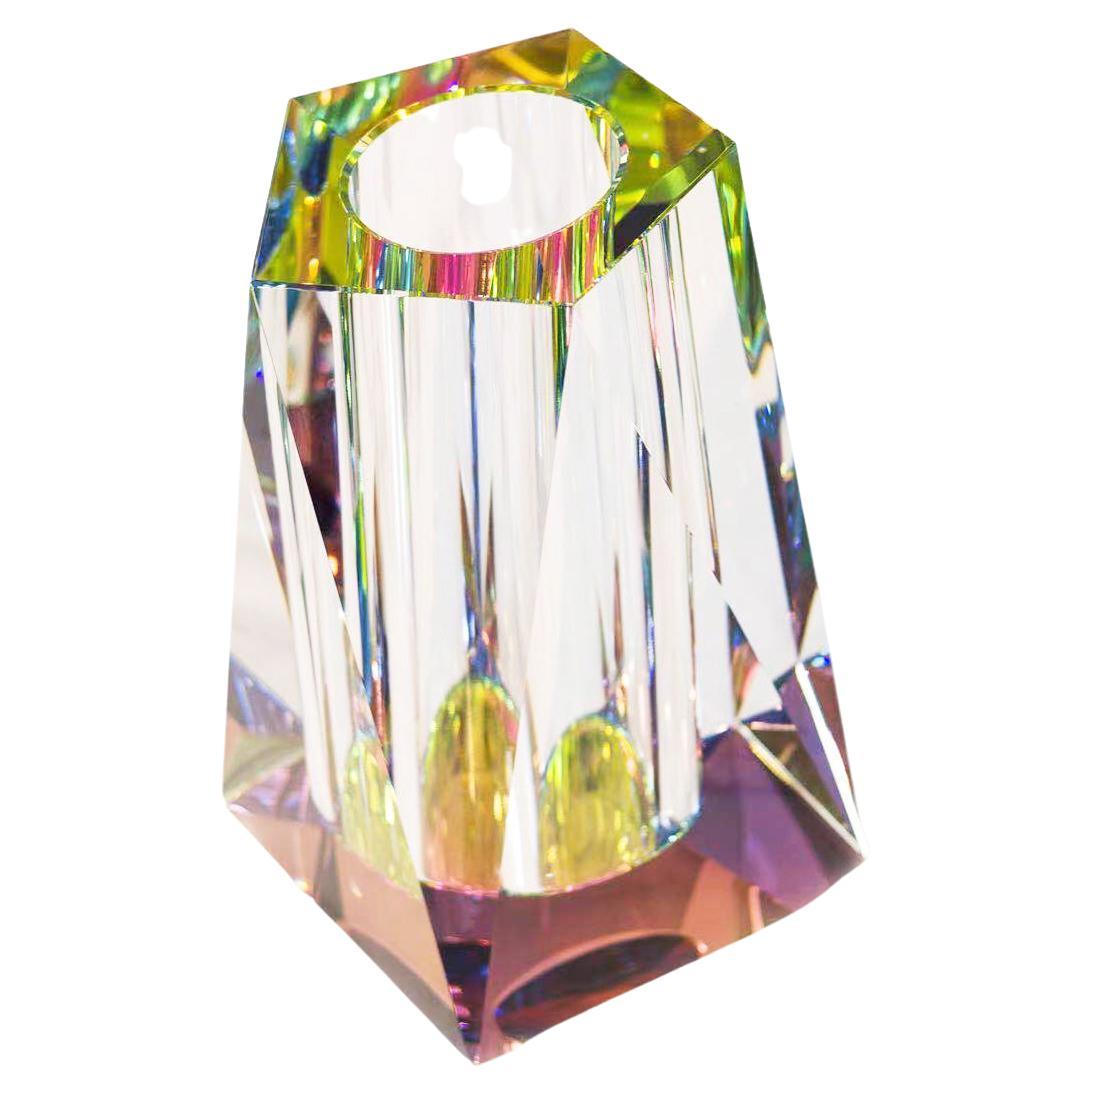 REGENBOGEN: Contemporary lead crystal large vase